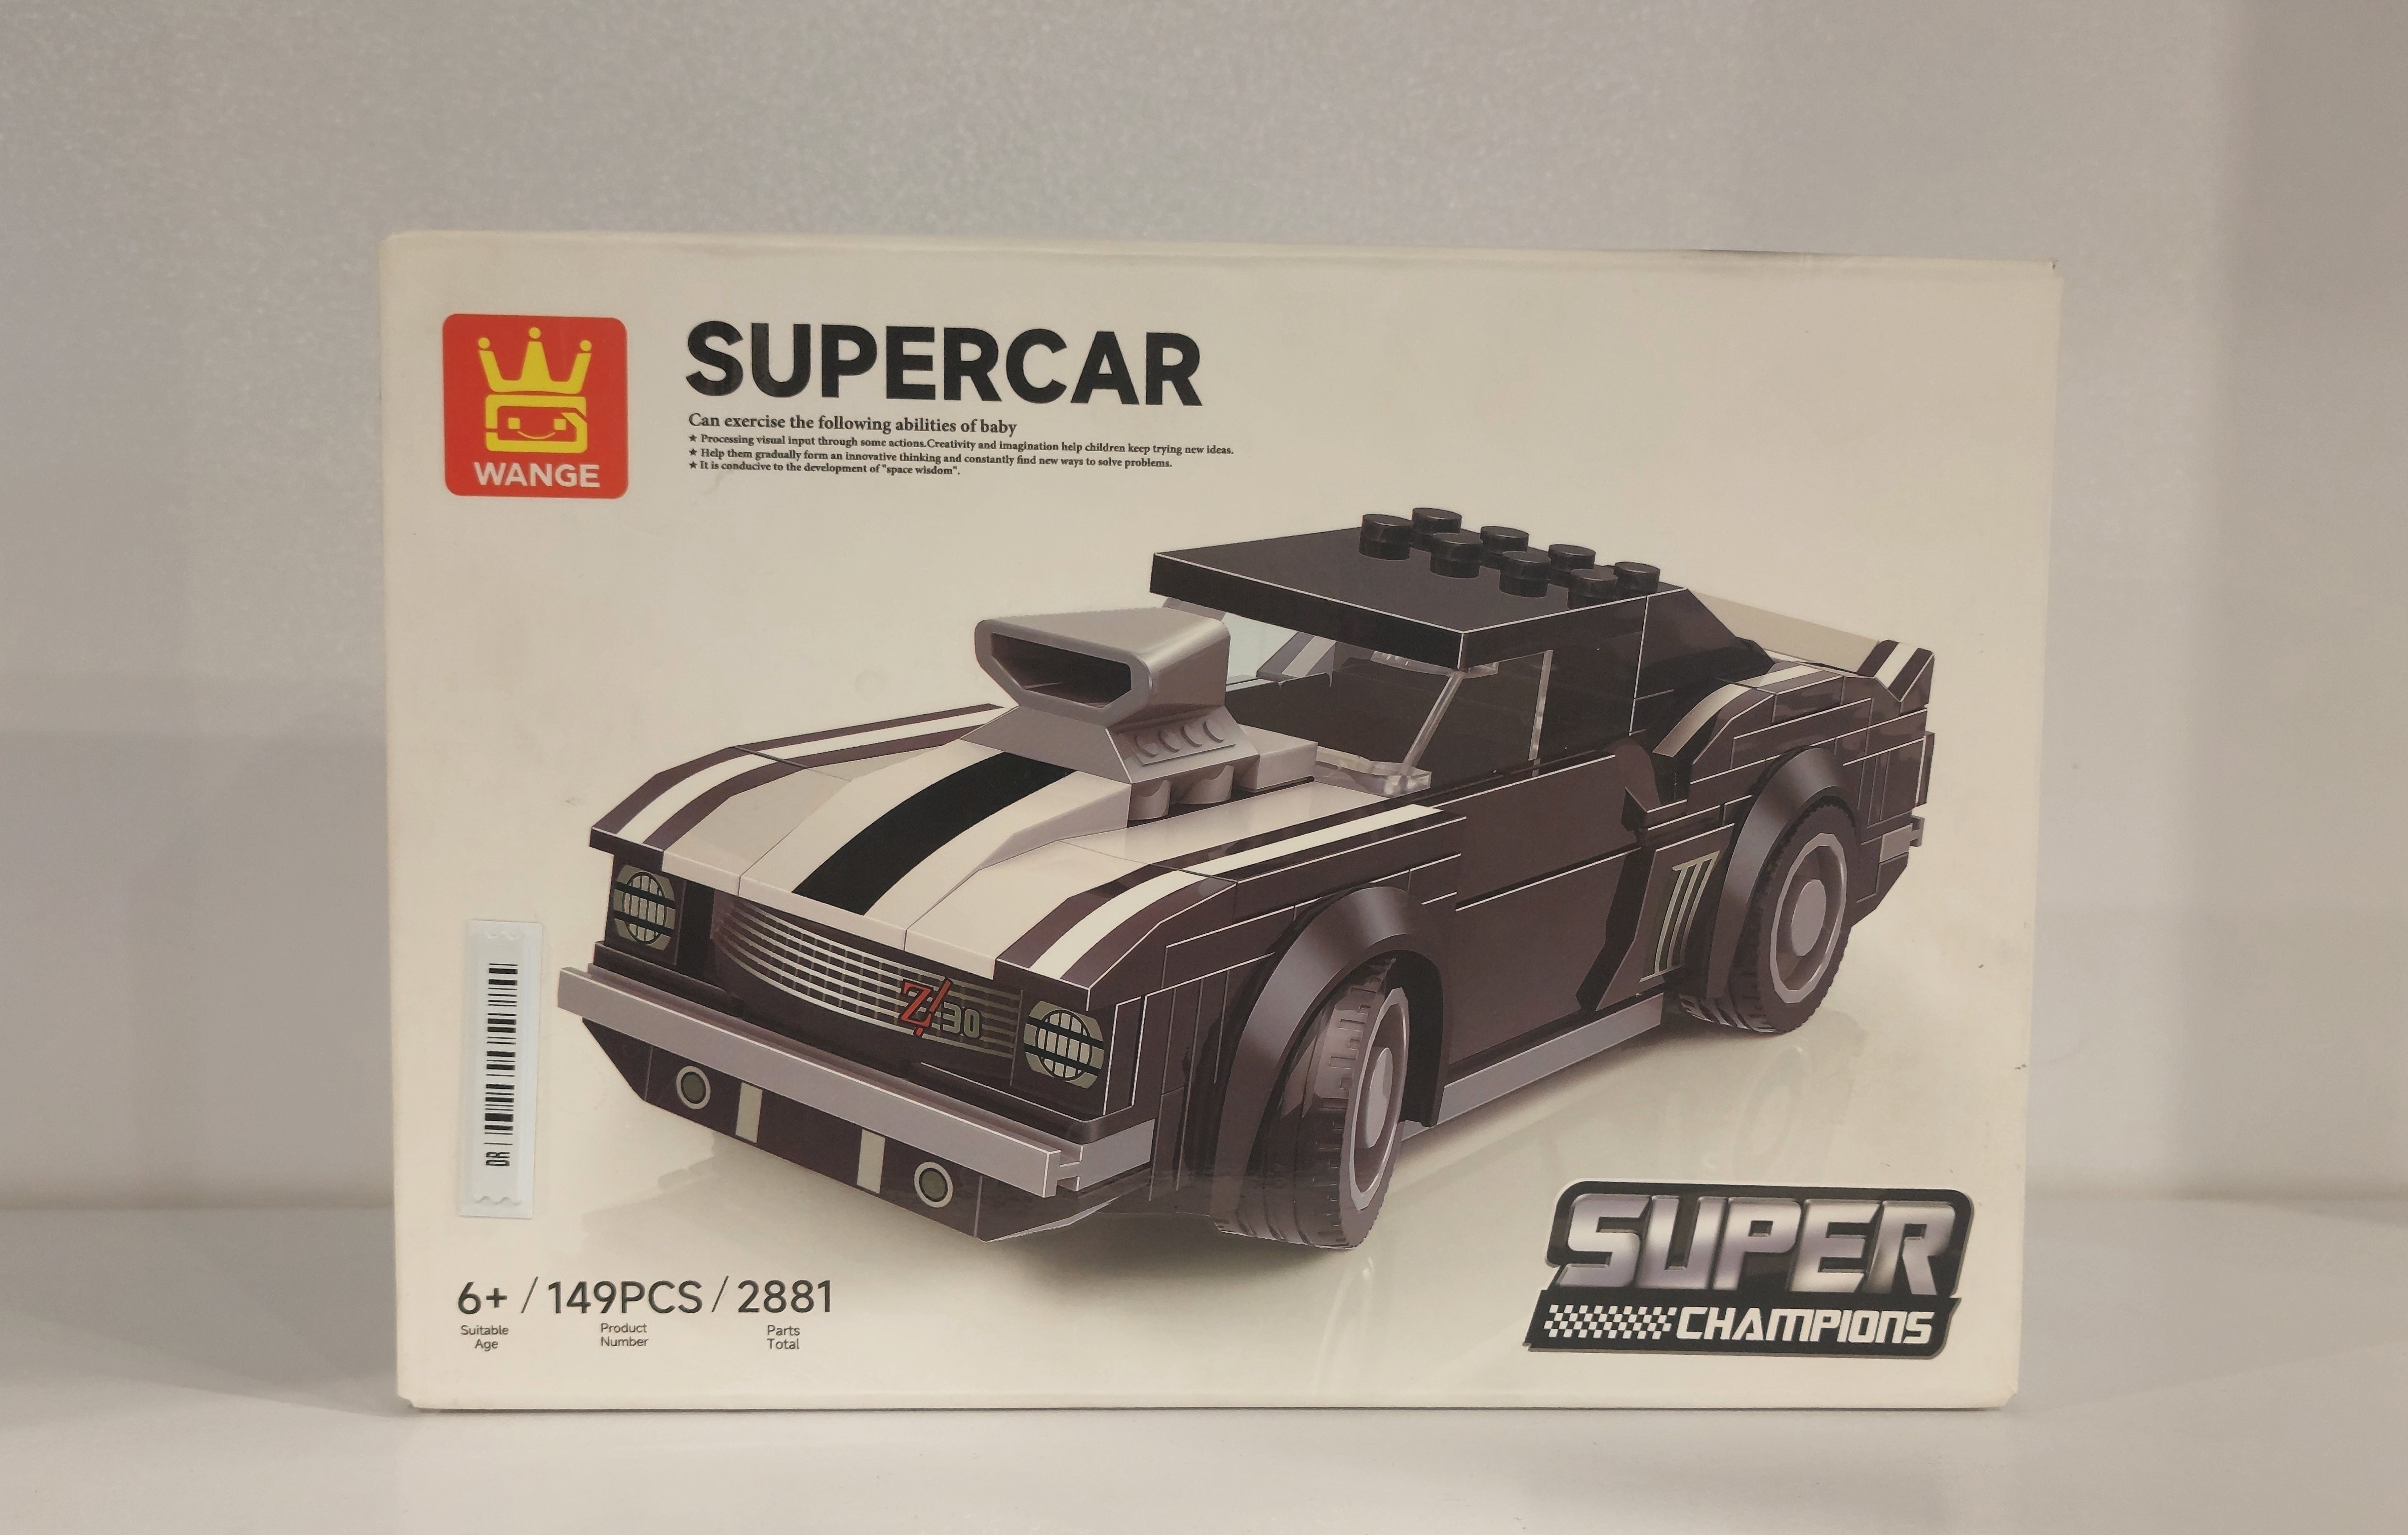 لگو-ماشین-supercar-کد-2881